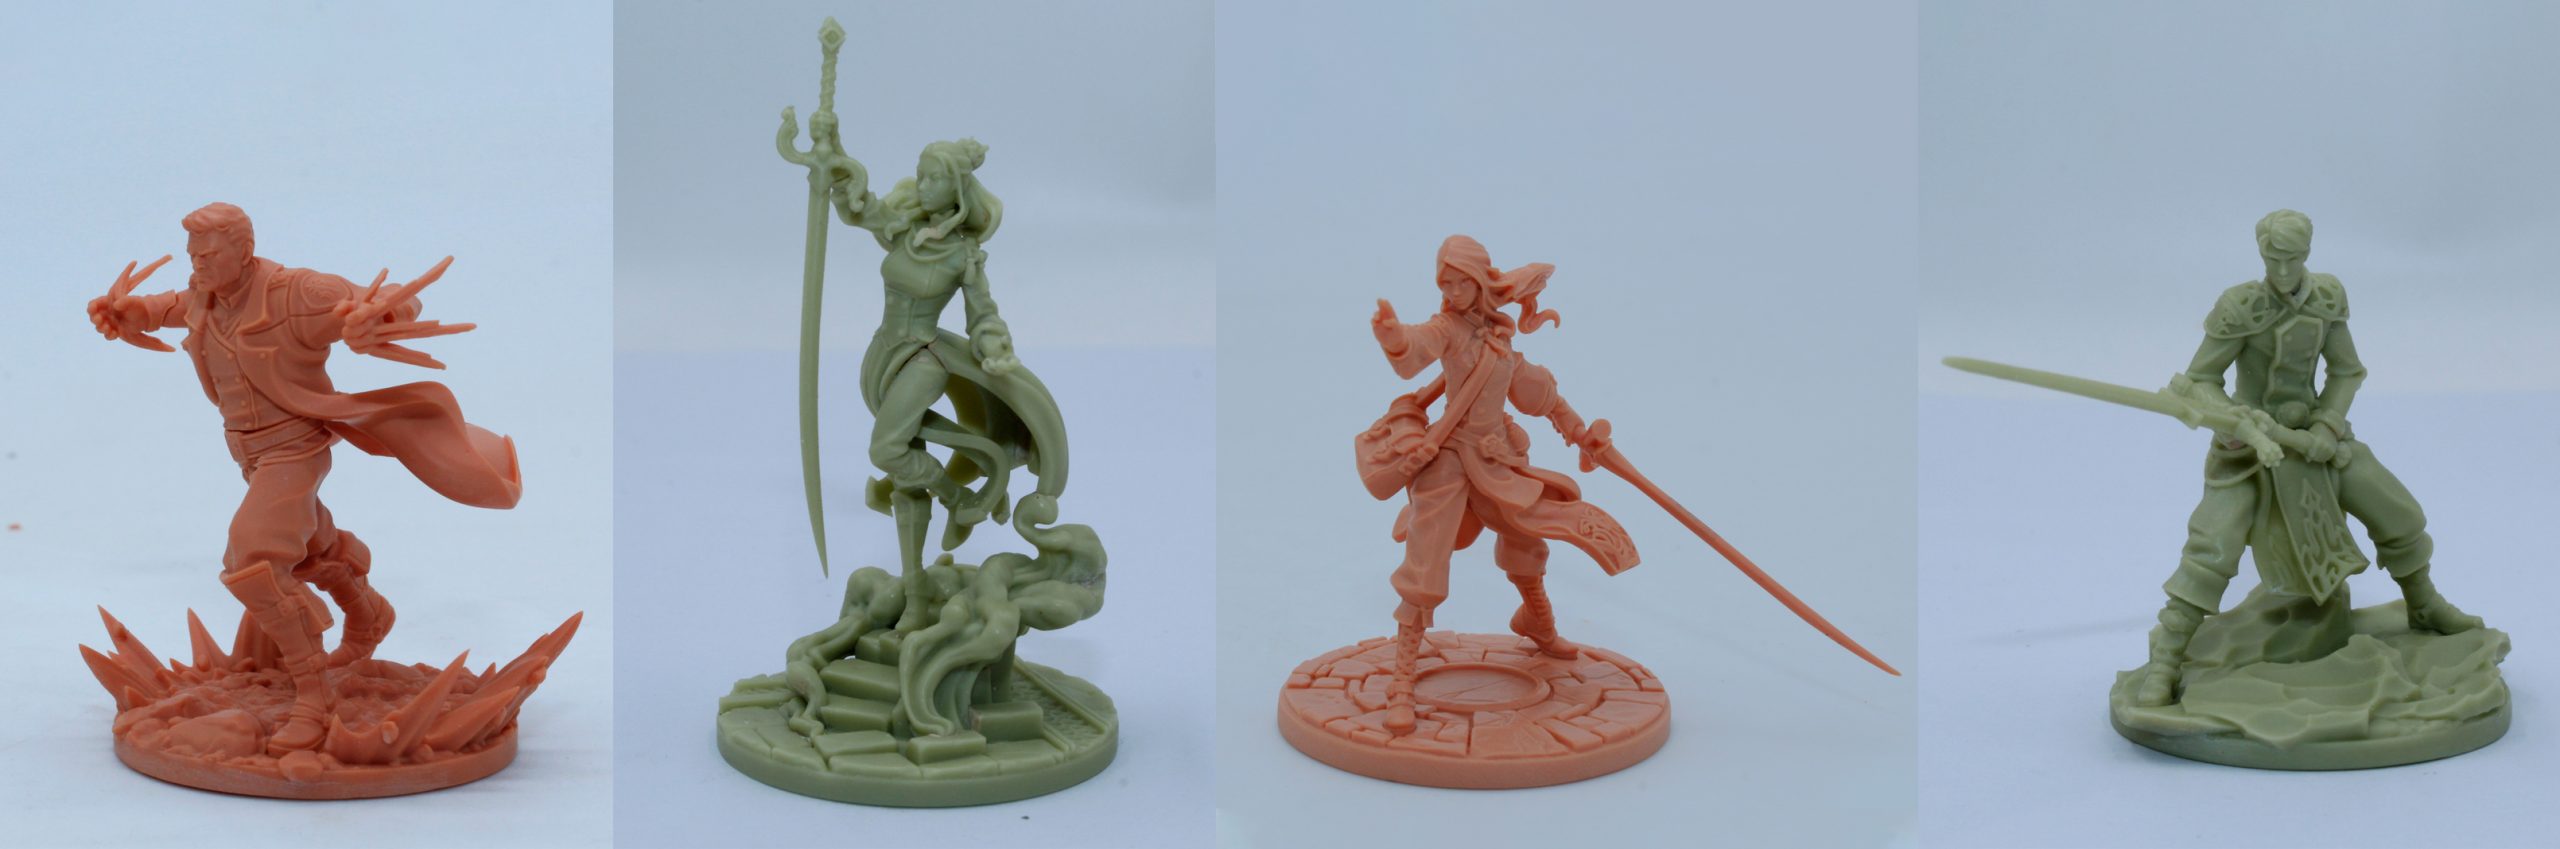 Stormlight Premium Miniatures - Prototipos de miniaturas - Dalinar, Jasnah, Shallan y Adolin (el color del plástico no es definitivo)